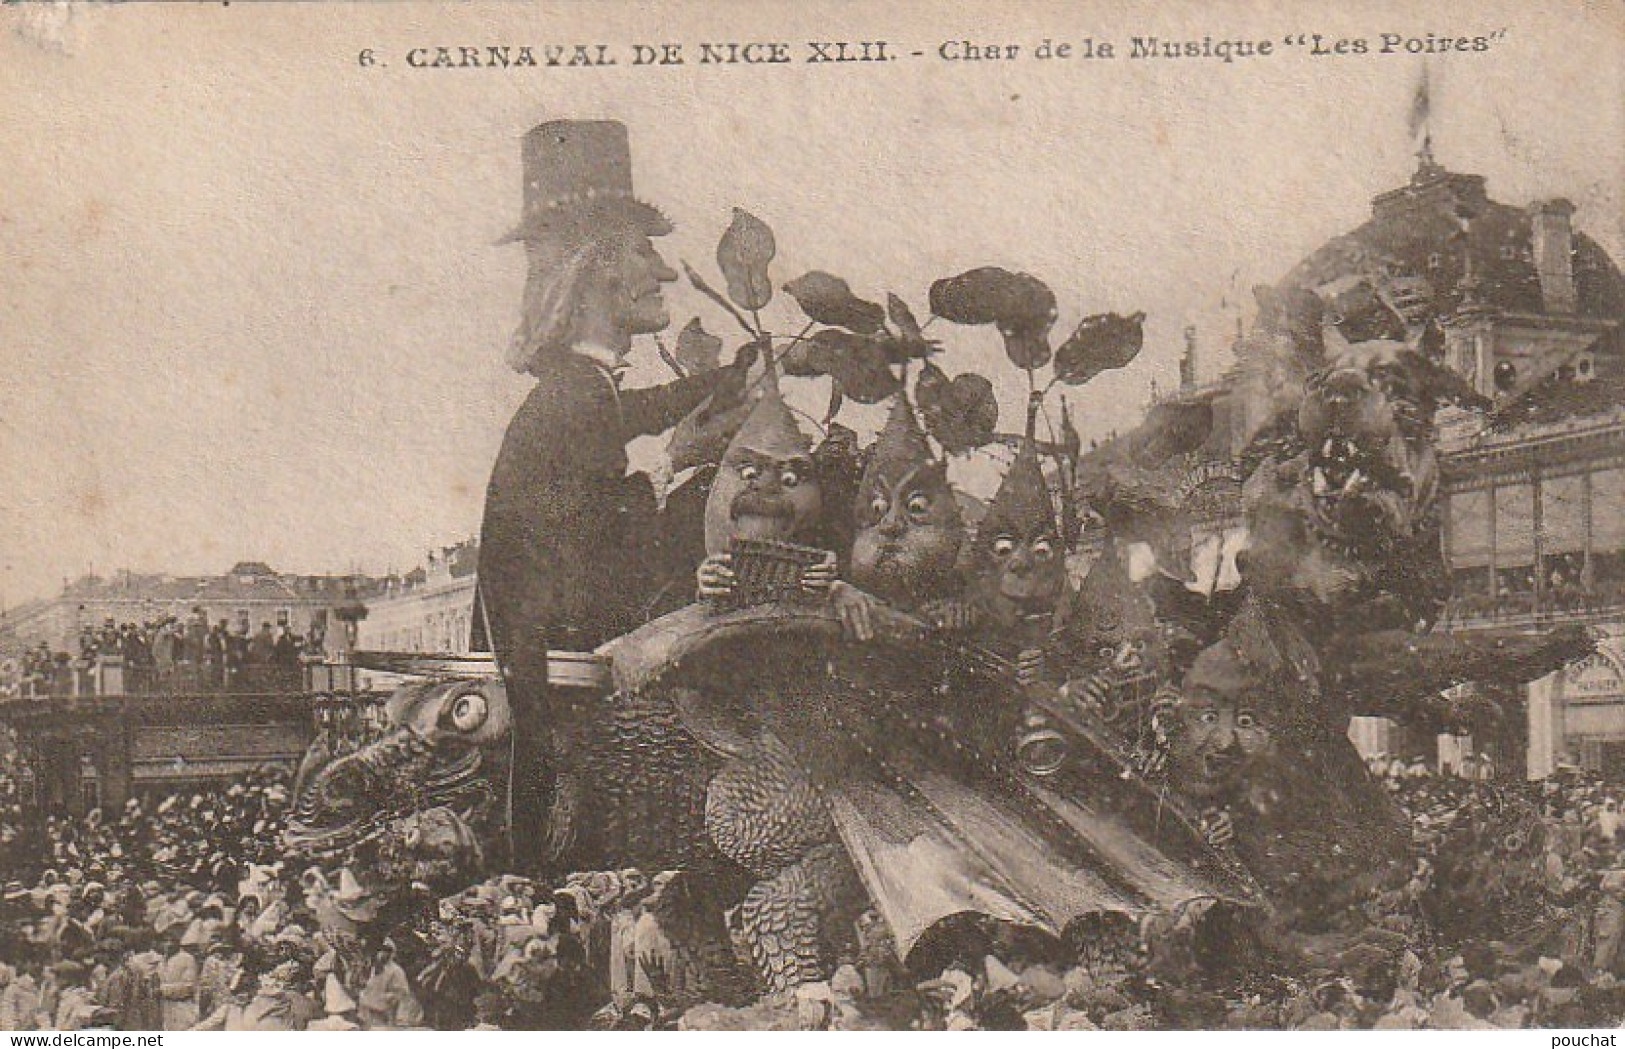 XXX -(06) CARNAVAL DE NICE XLII - CHAR DE LA MUSIQUE " LES POIRES " - TAMPON MARCELLINI & Cie , NICE - 2 SCANS - Carnaval